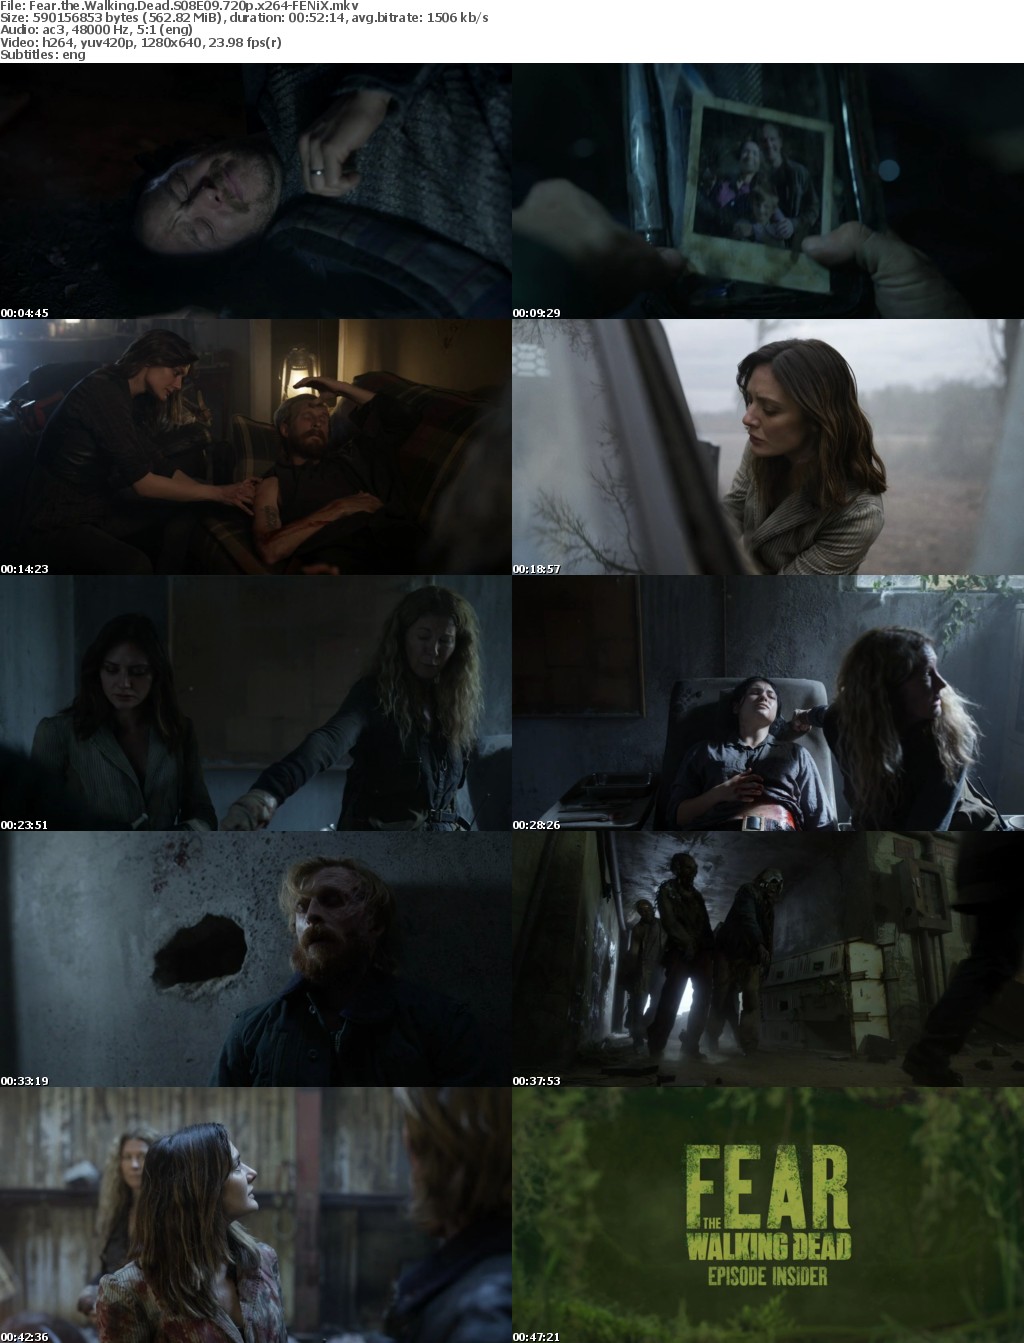 Fear the Walking Dead S08E09 720p x264-FENiX Saturn5